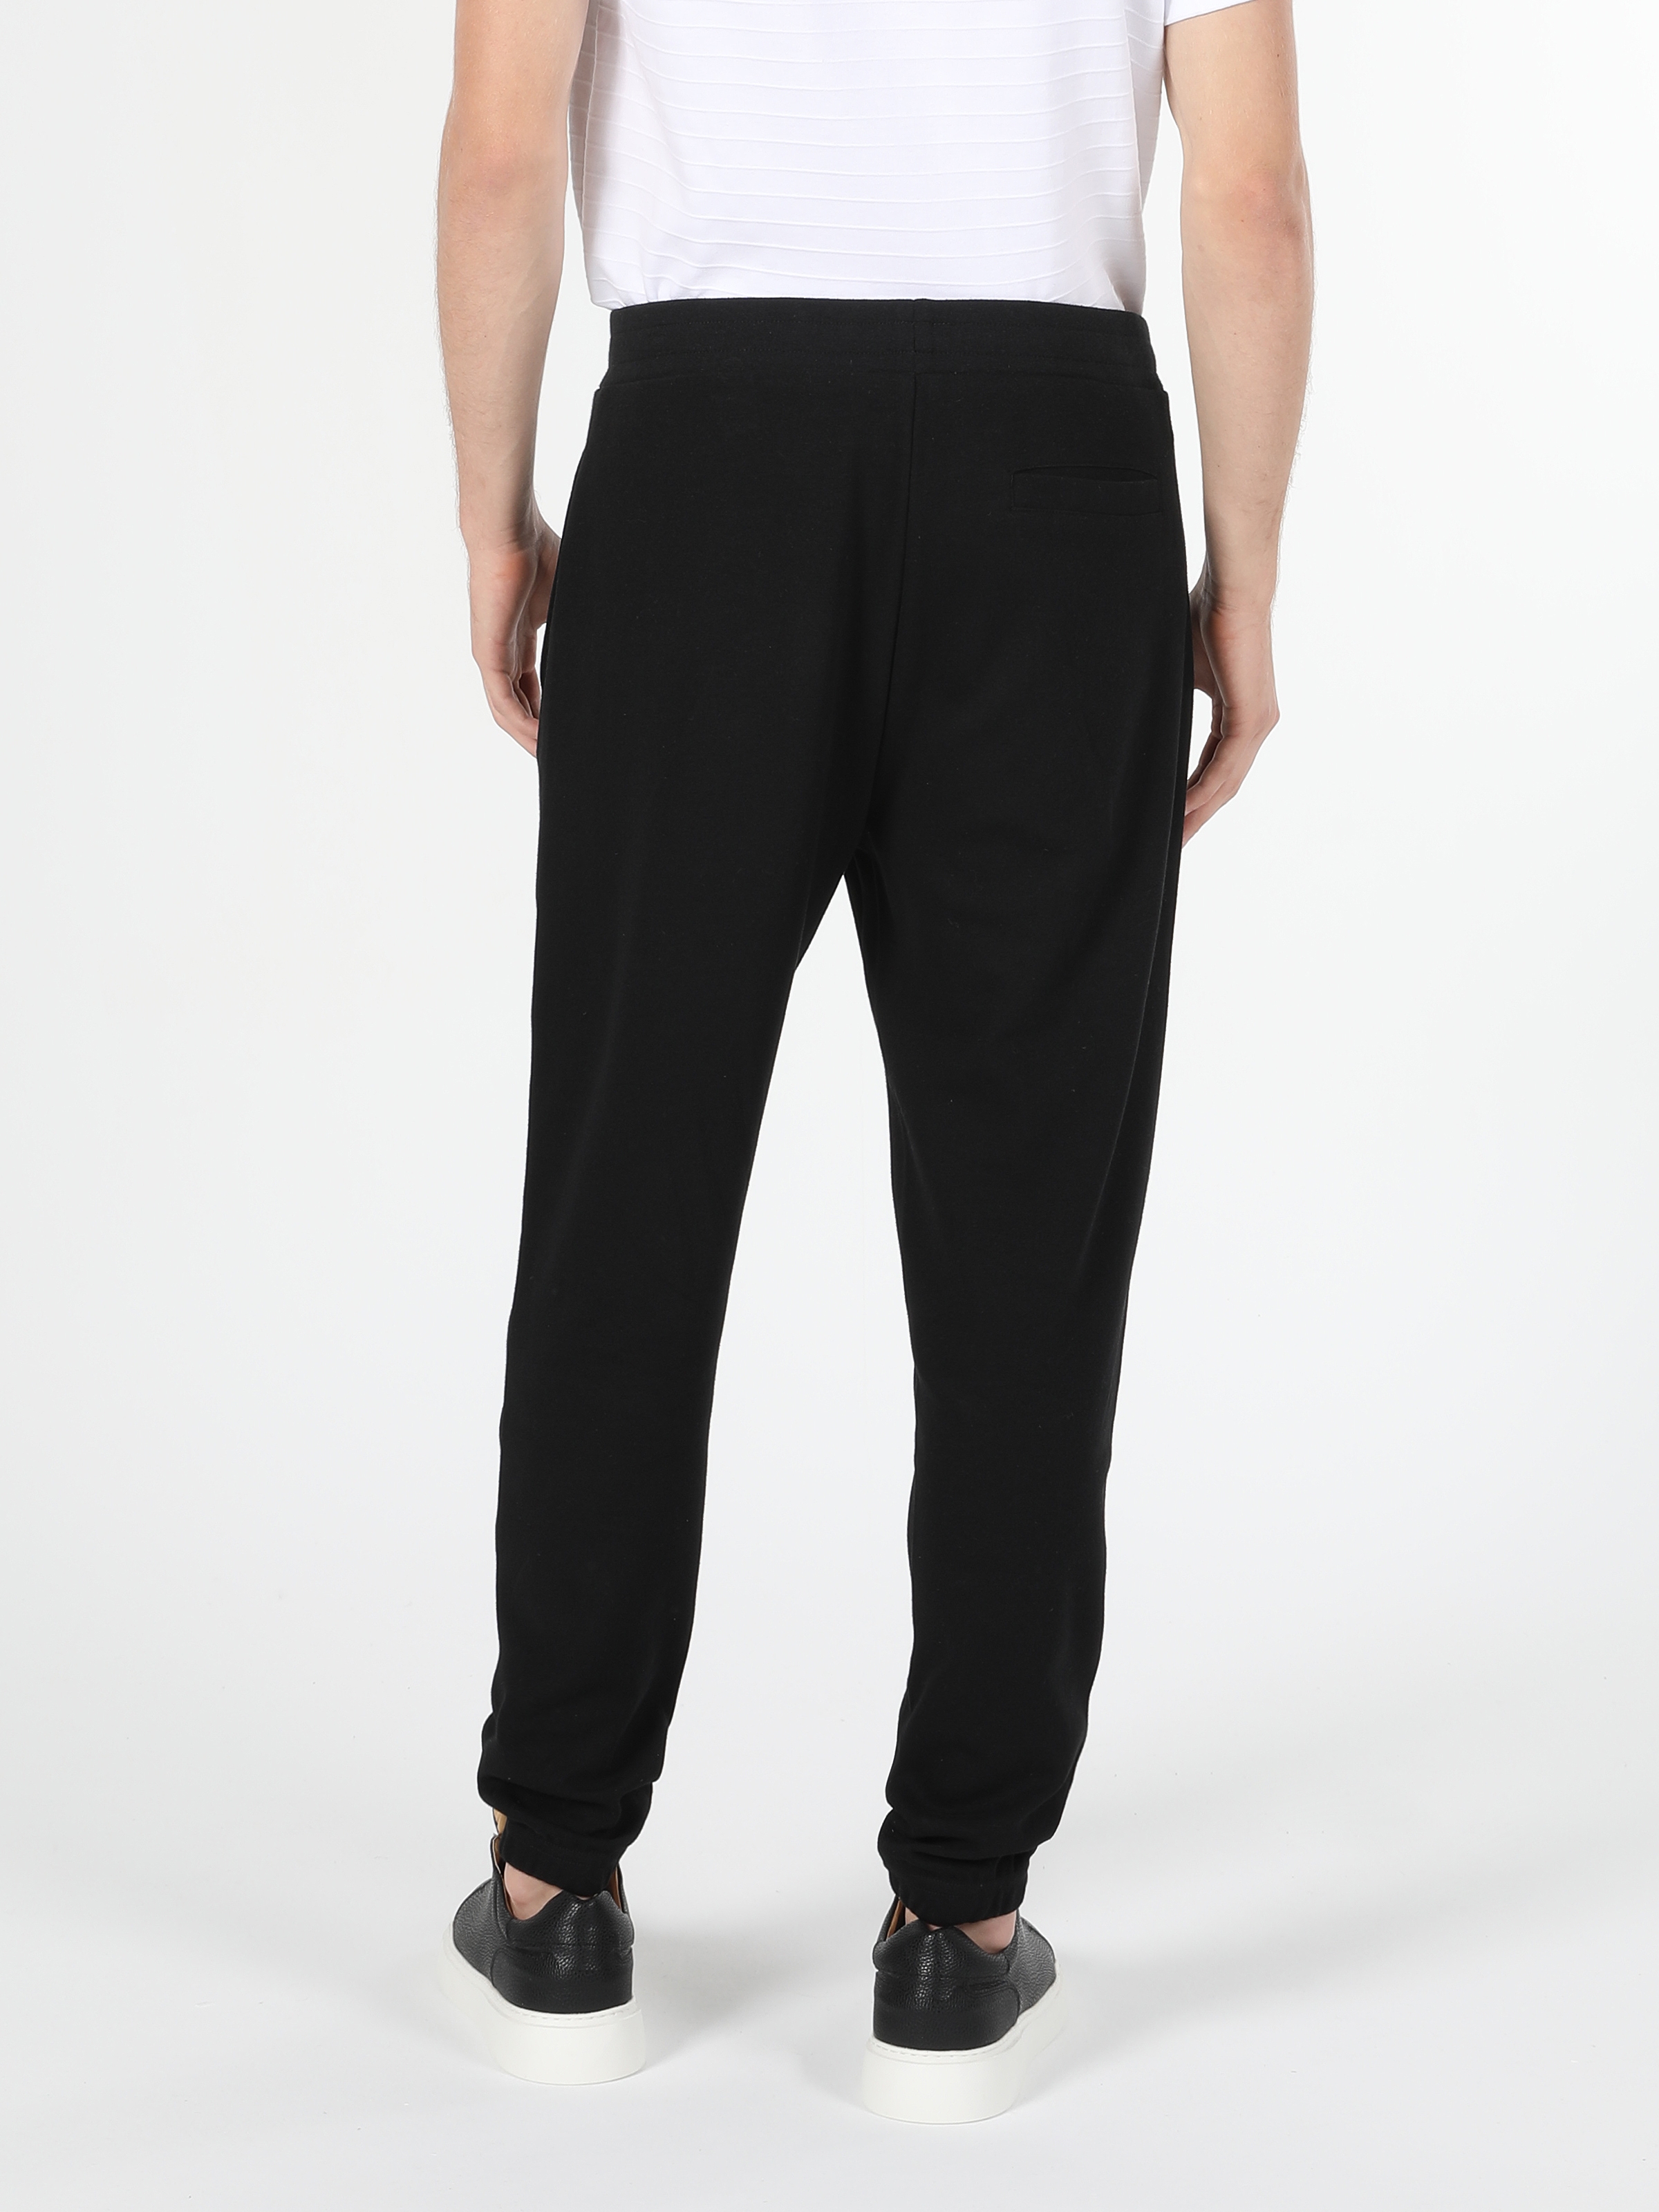 Afficher les détails de Pantalon De Survêtement Noir Taille Moyenne Pour Homme, Coupe Slim